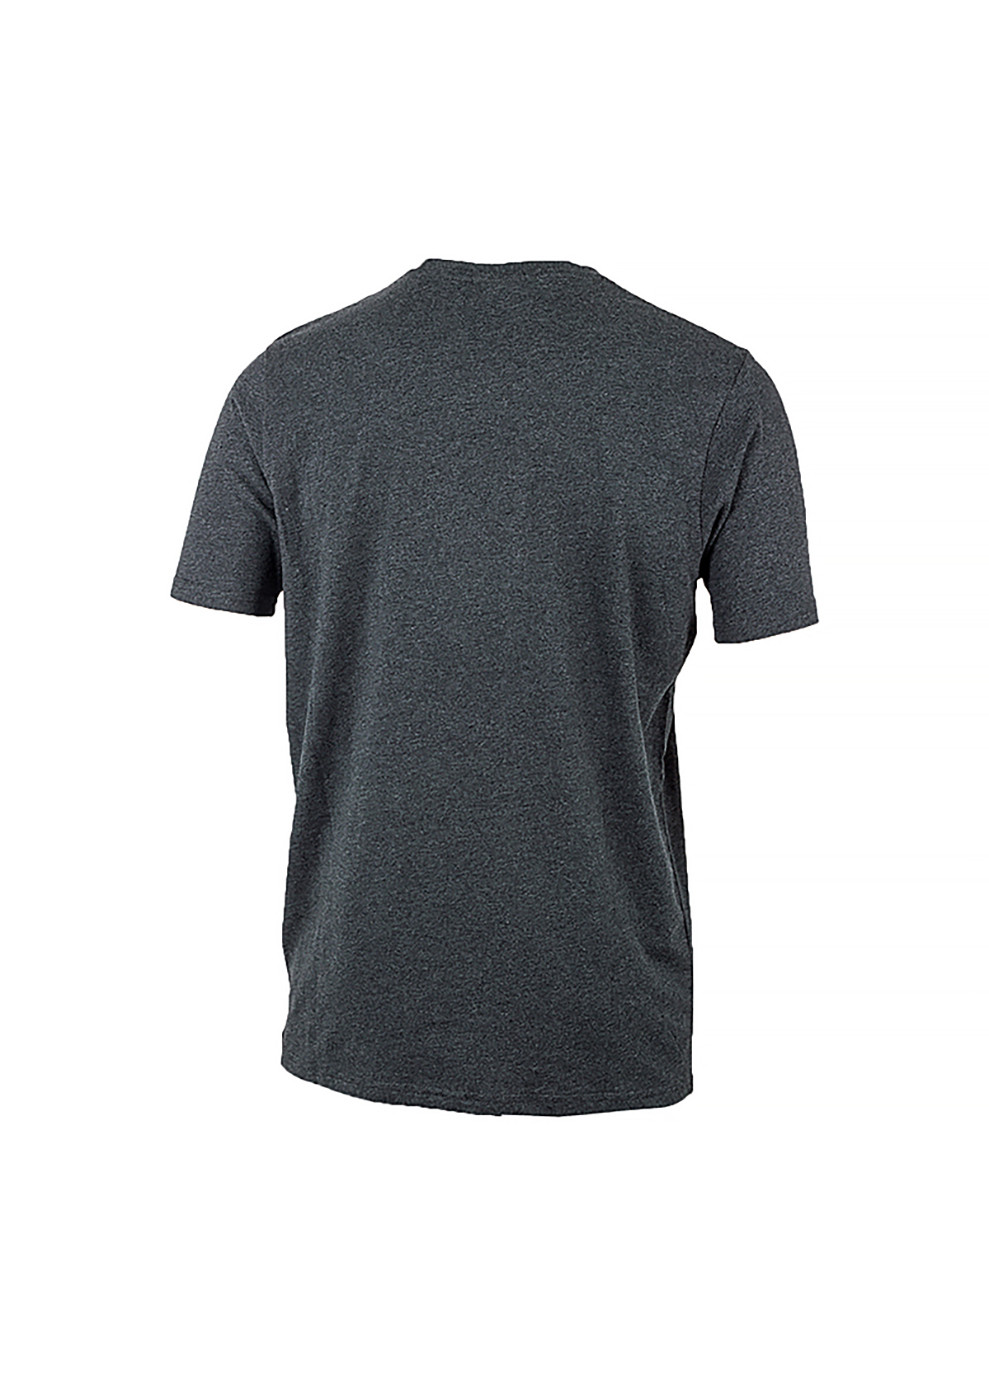 Сіра чоловіча футболка sl prado сірий l (shc07405-dark-grey-marl l) Ellesse